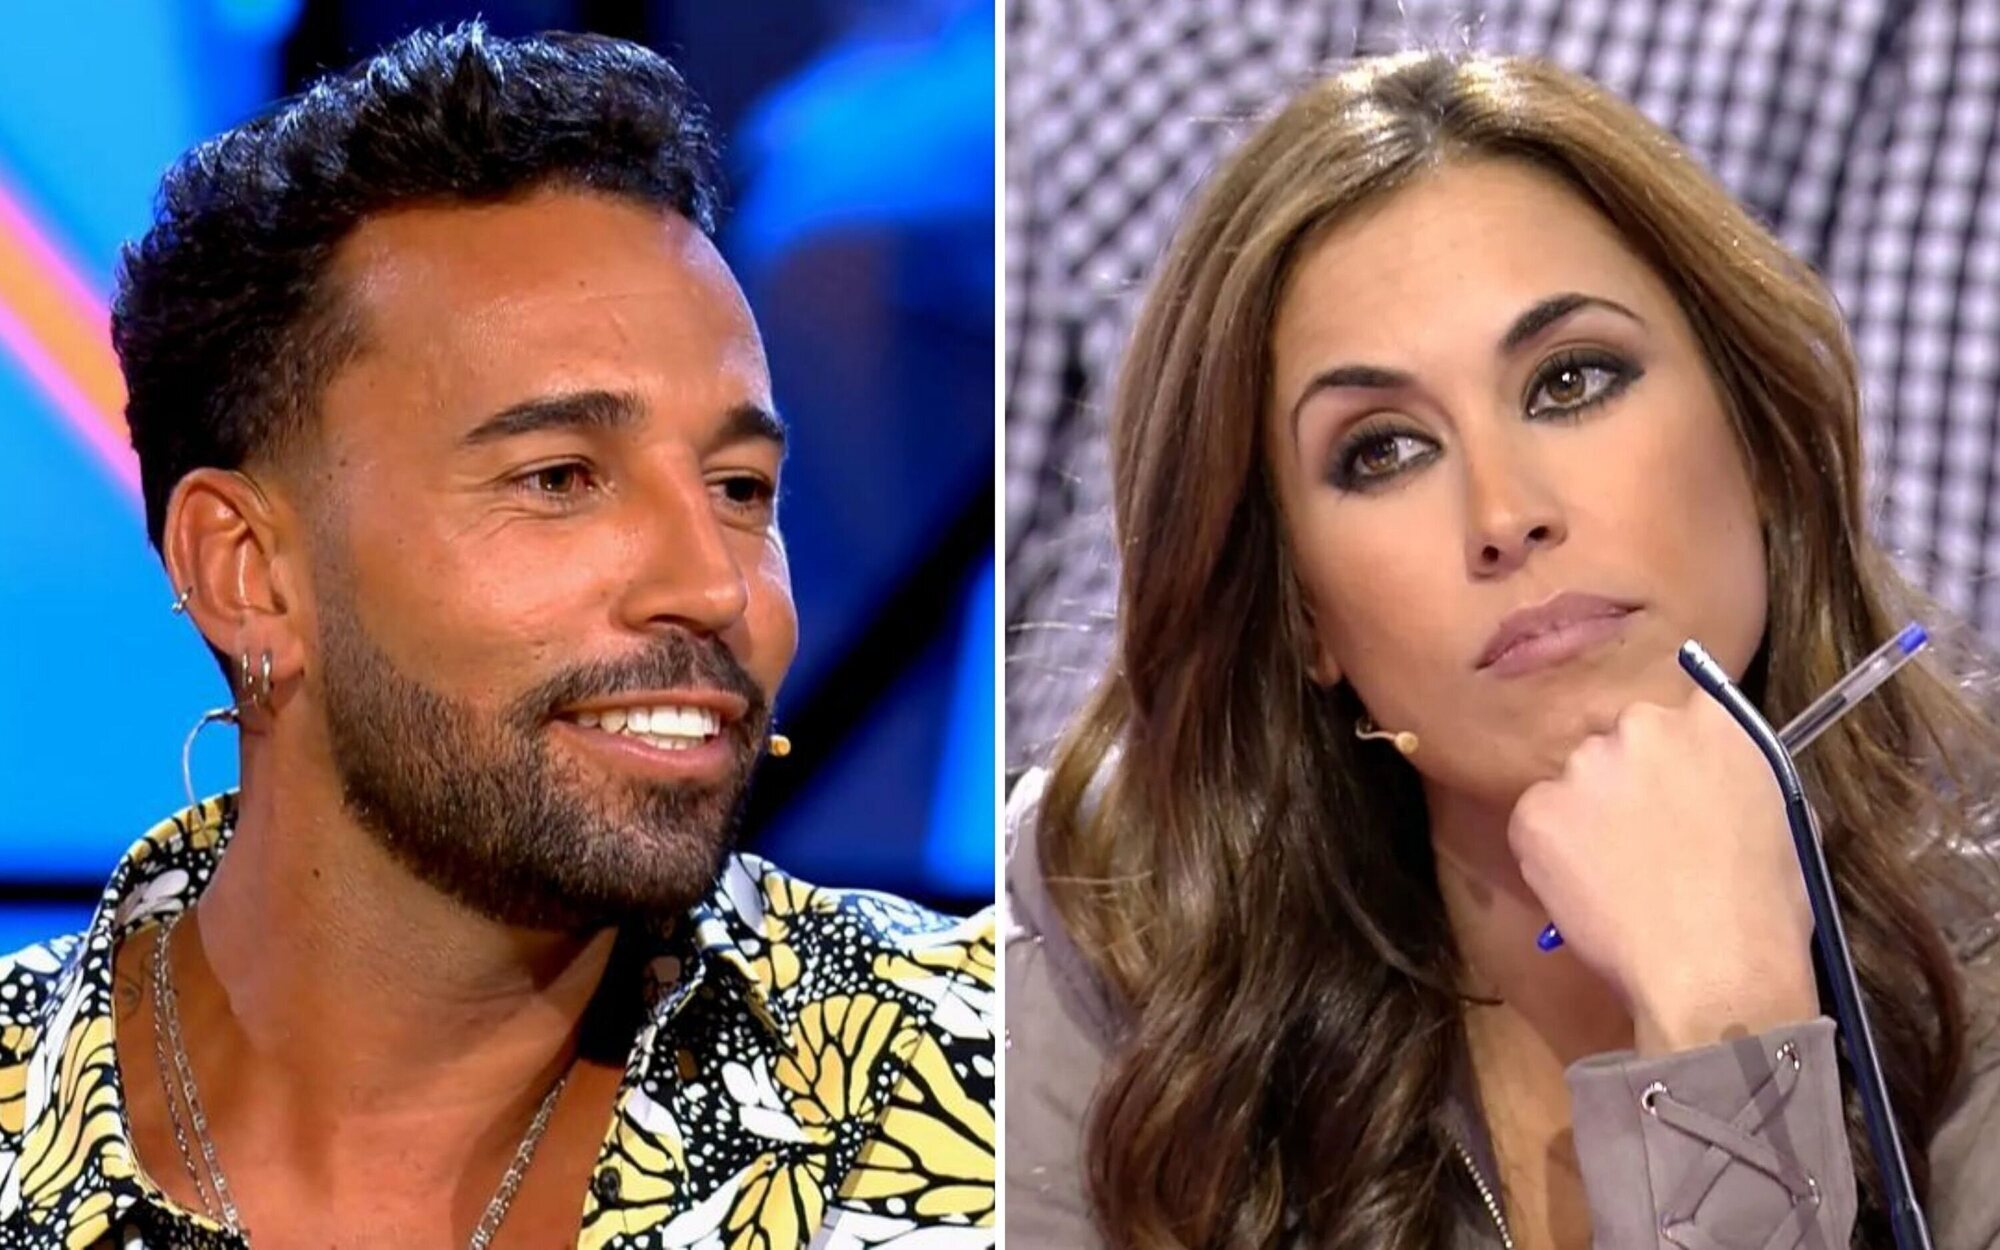 Omar Sánchez rompe con Raquel Lozano antes de 'Pesadilla en El Paraíso'